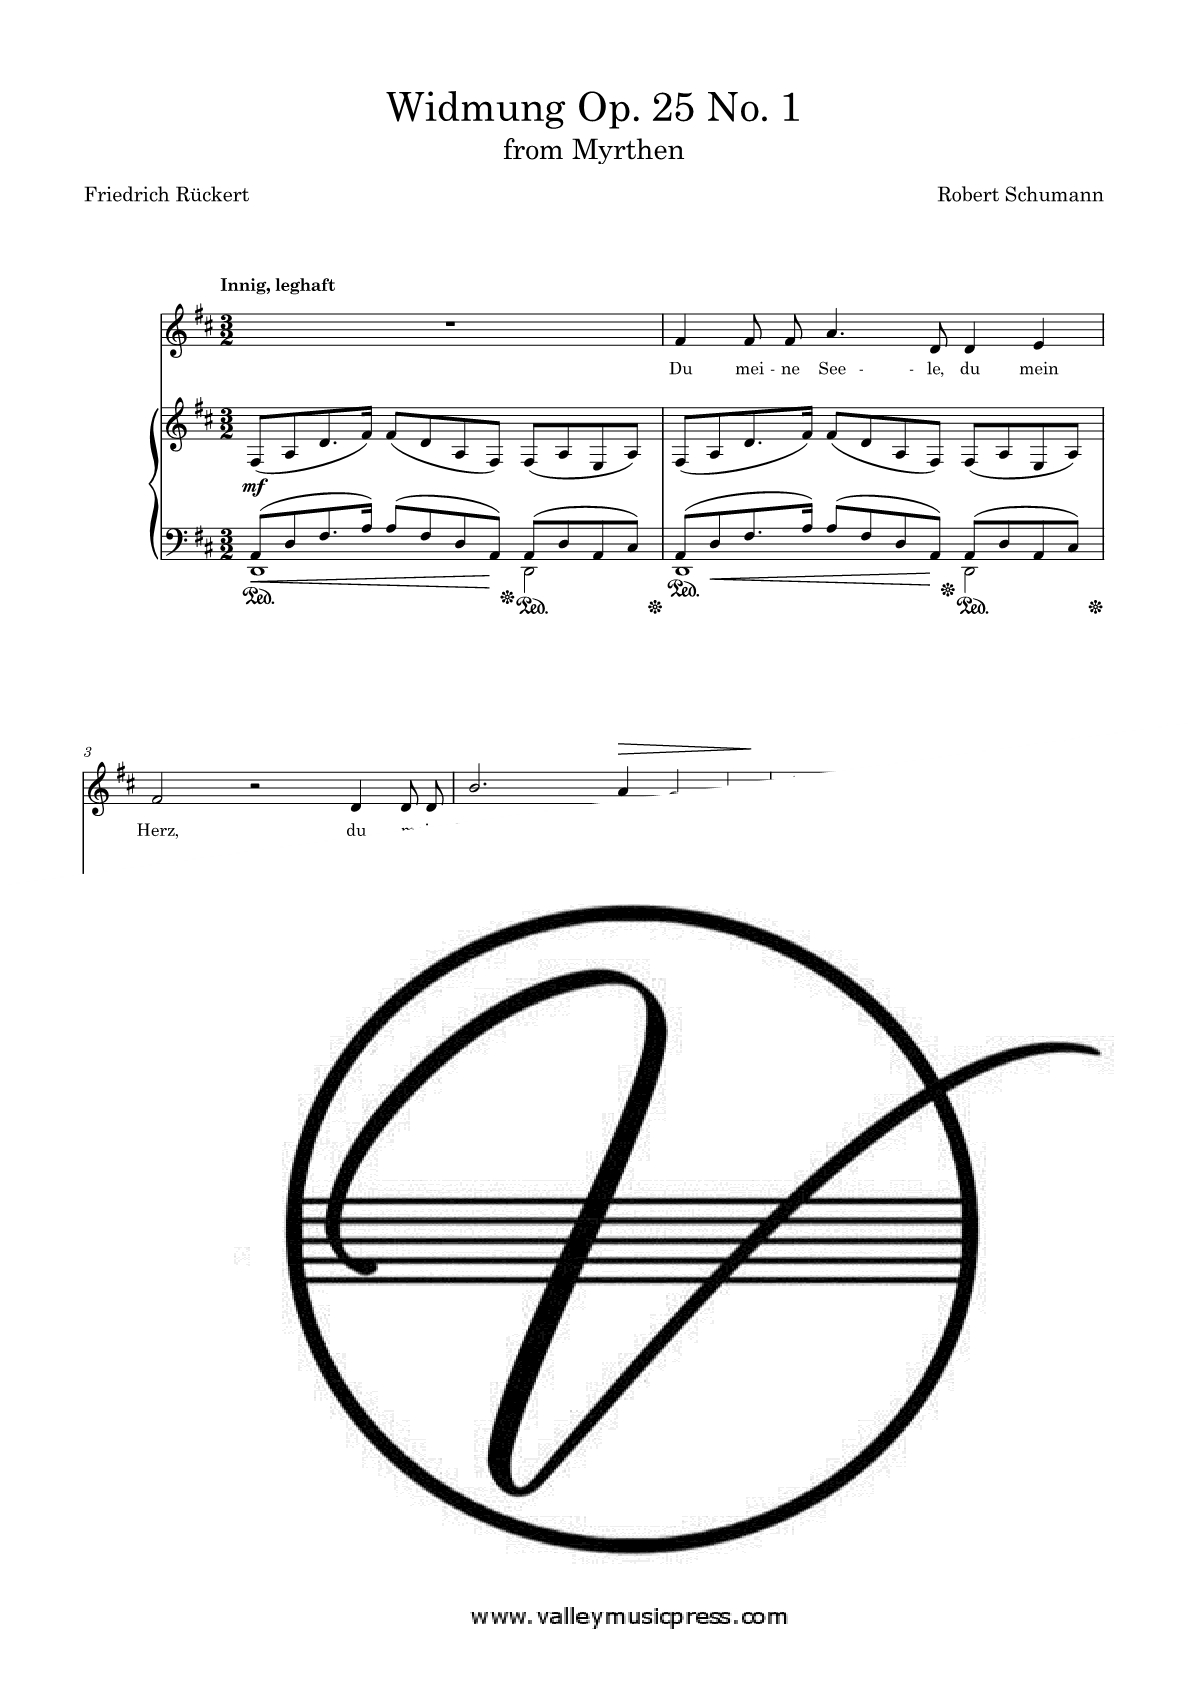 Schumann - Widmung Myrthren Op. 25 No. 1 (Voice) - Click Image to Close